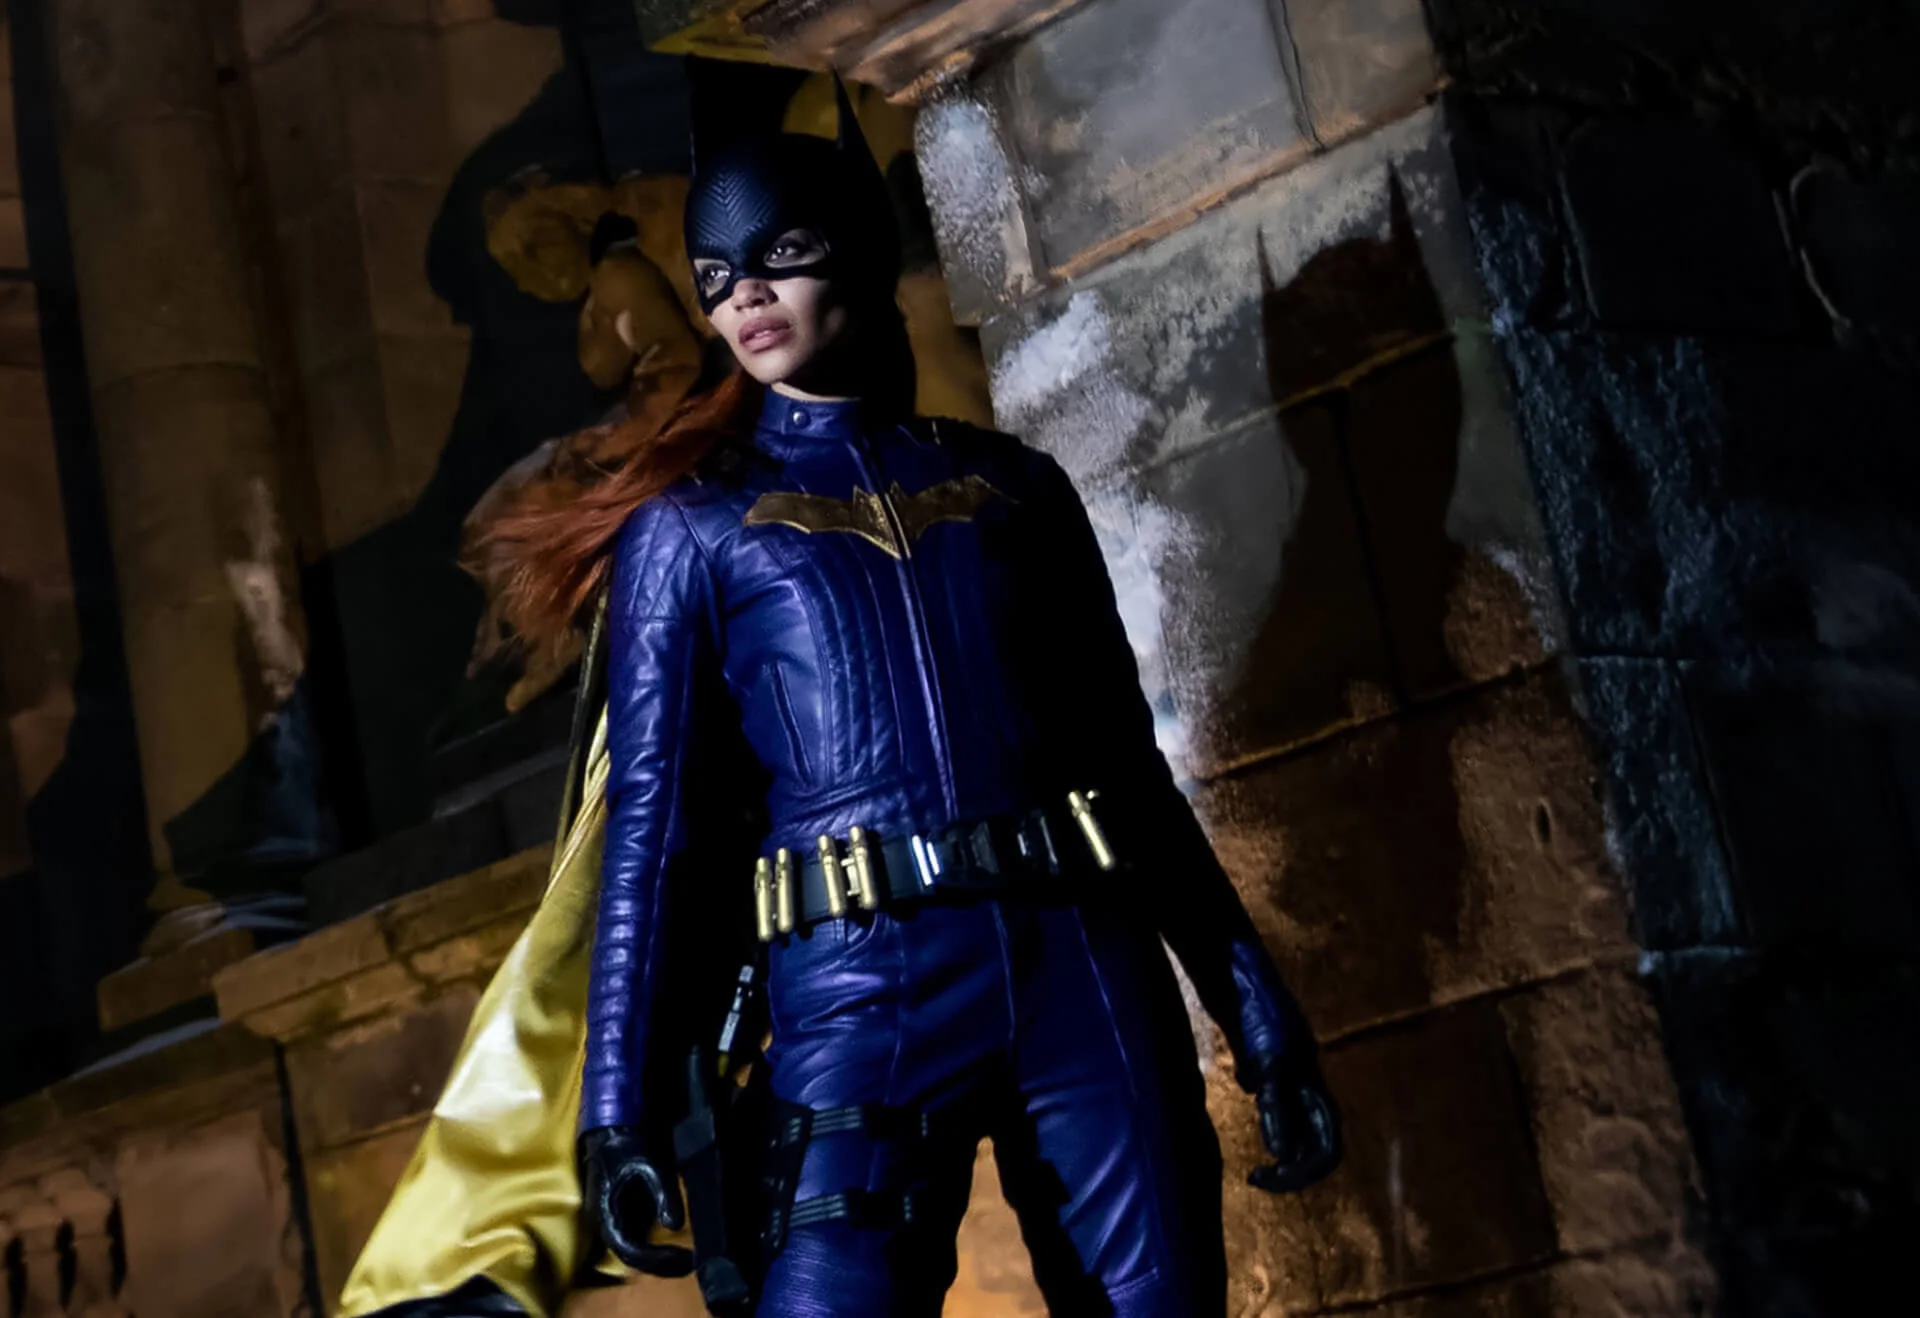 A DC Studios új vezetője, Peter Safran szerint helyes döntés volt törölni a Batgirlt: “Ez ártott volna a DC-nek”